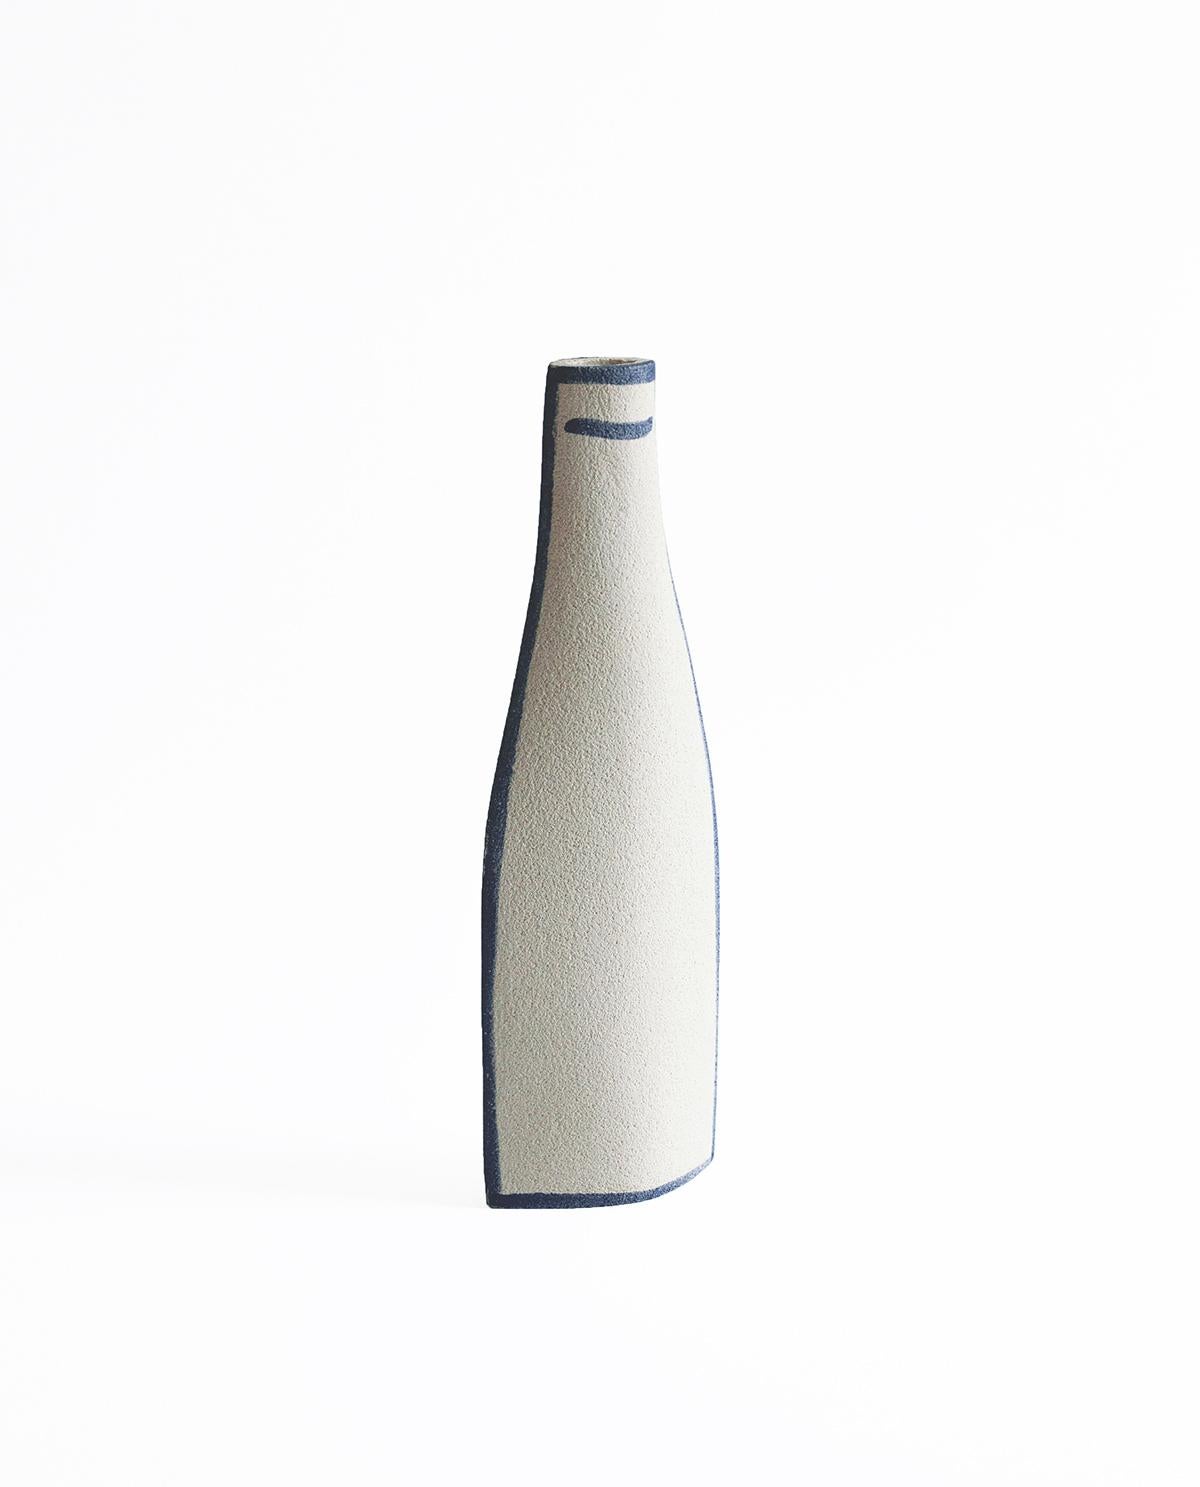 Wir freuen uns, Ihnen die erste Ergänzung der INI CERAMIQUE Collection'S 2024 vorstellen zu können. Inspiriert von den Werken des Malers Giorgio Morandi, hat unsere Designerin diese Vasen mit ihrem eigenen Gefühl neu interpretiert und gestaltet. Die